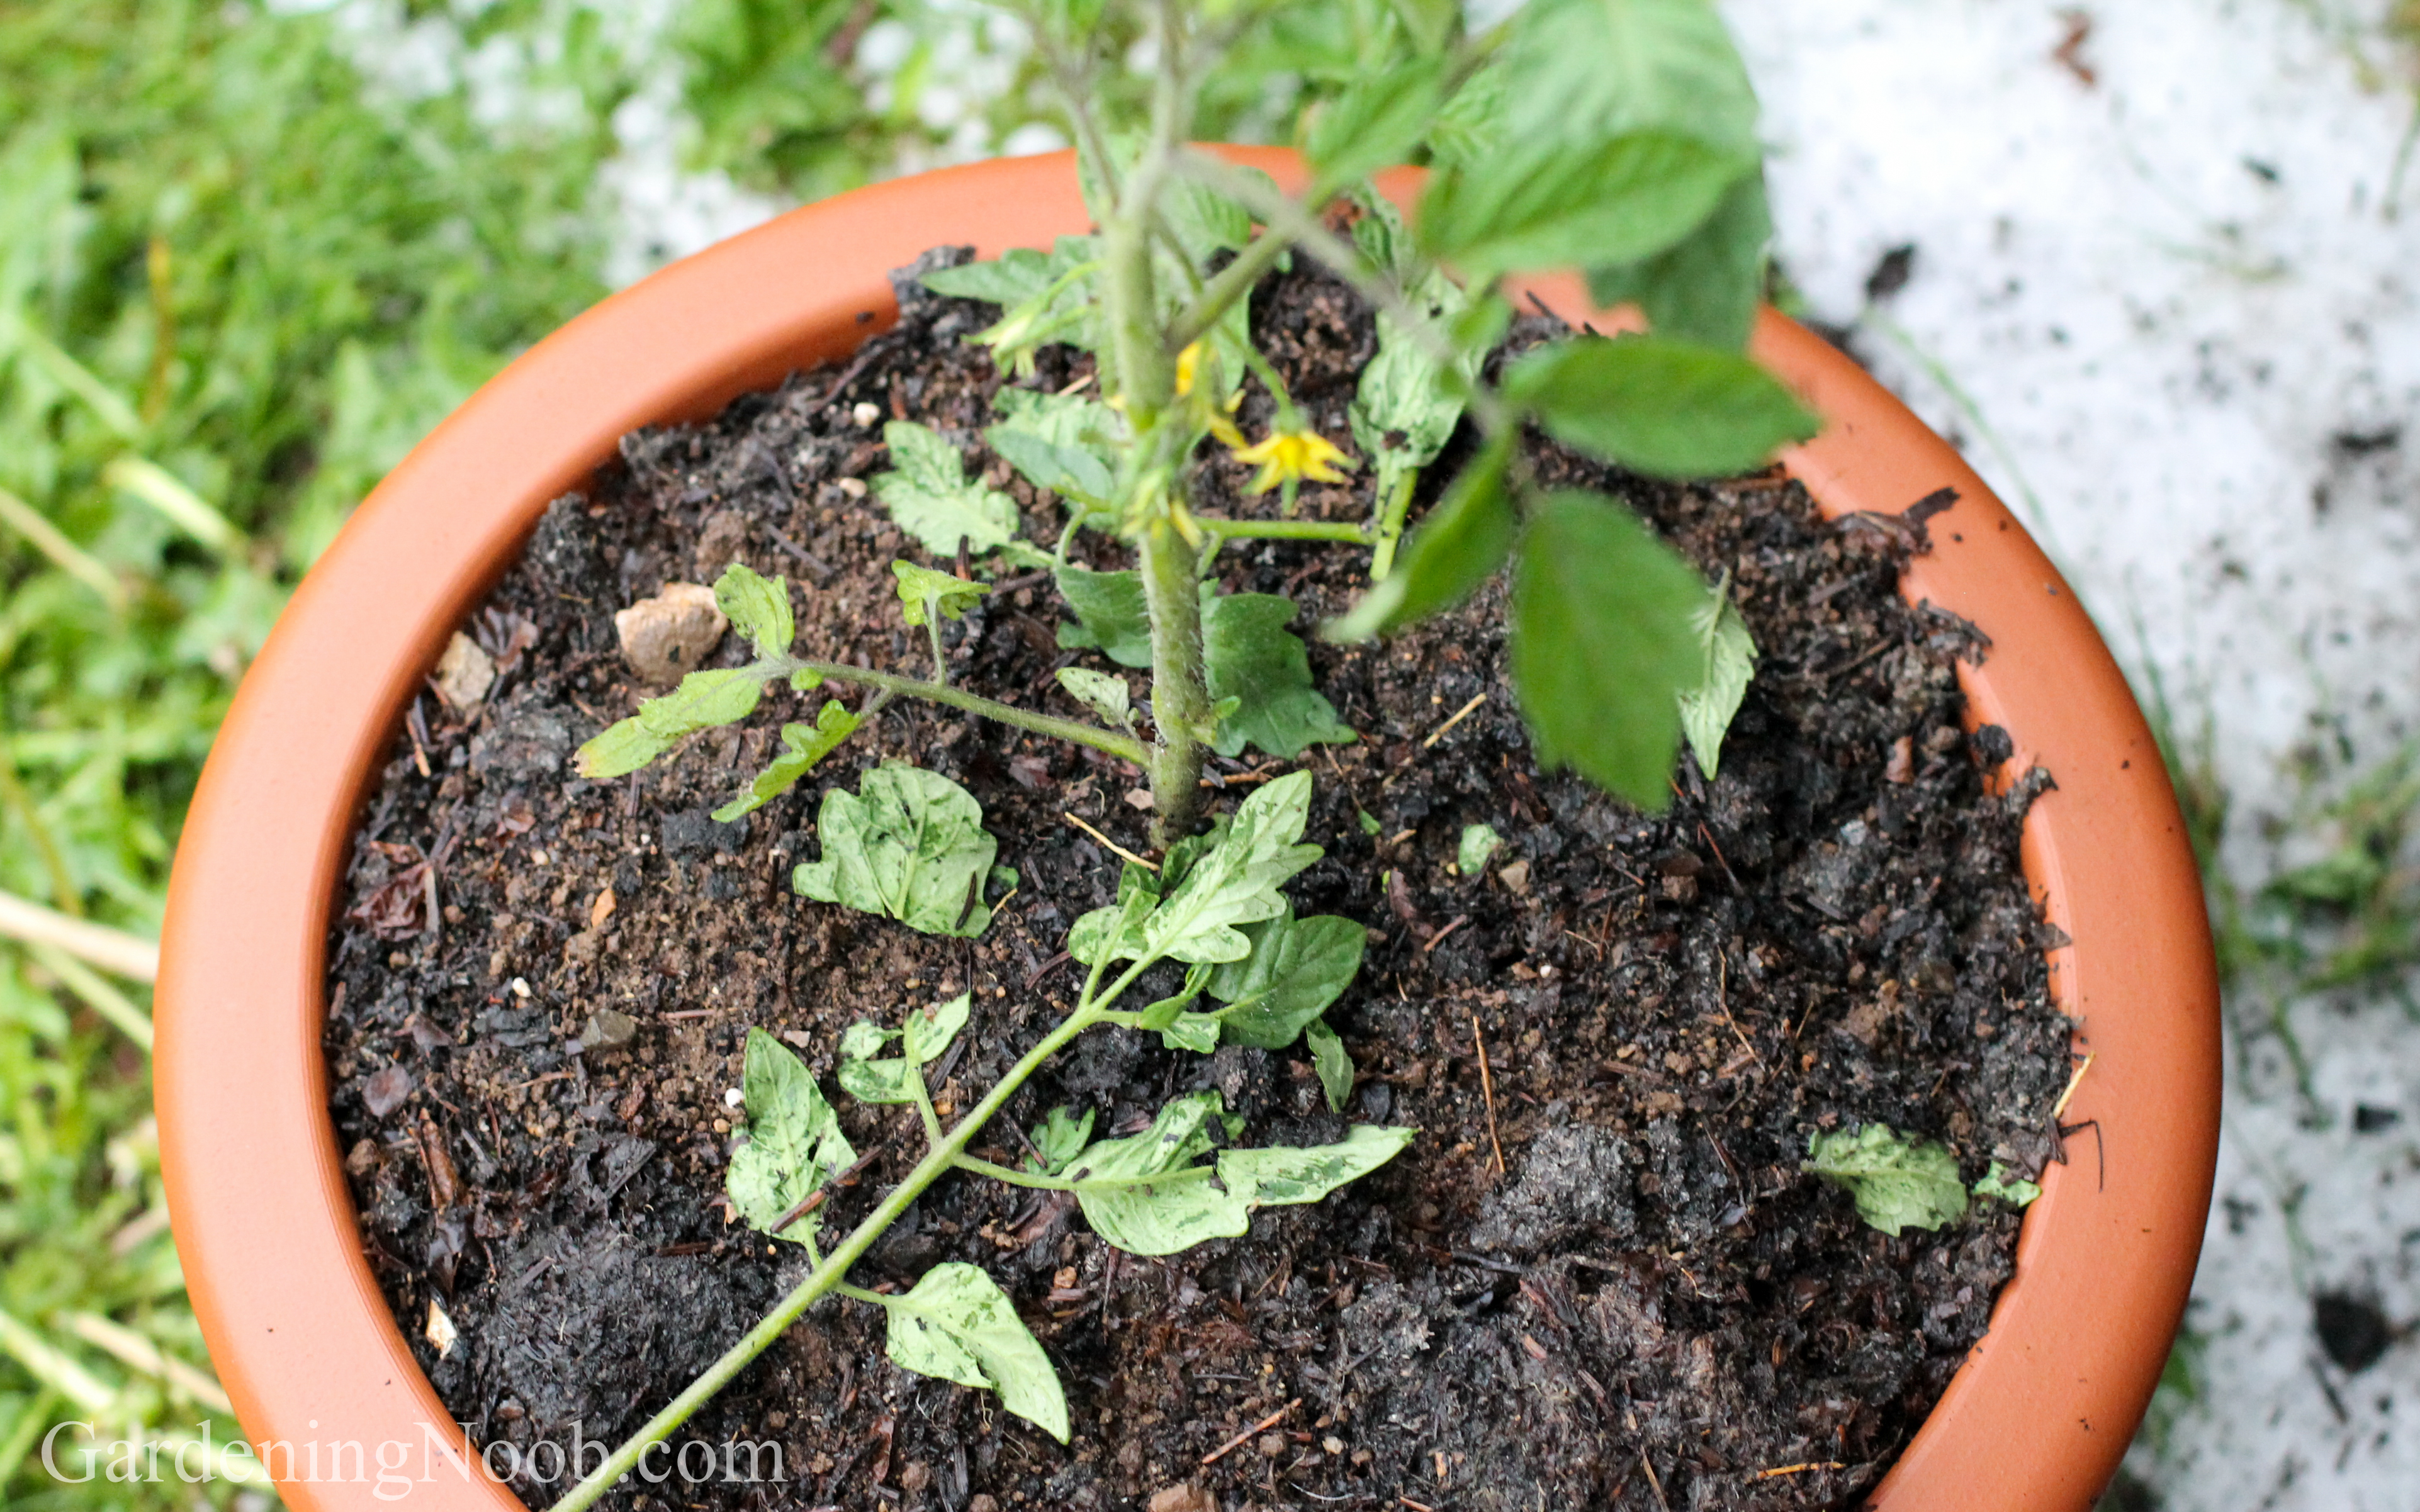 A hail-beaten tomato plant